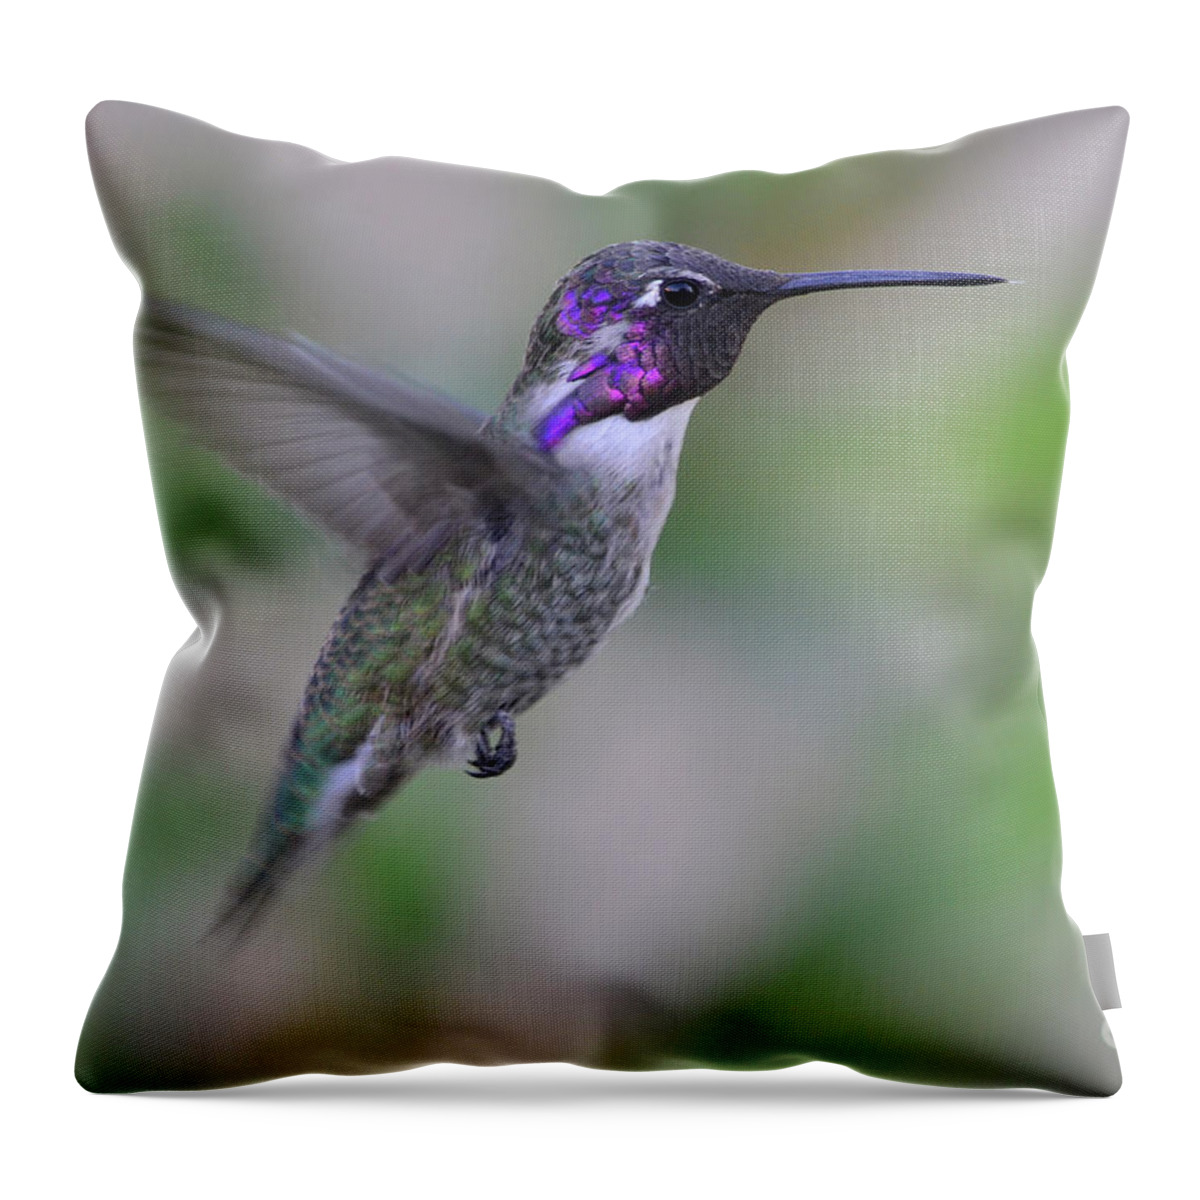 Rose Throw Pillow featuring the photograph Hummingbird Flight by Debby Pueschel